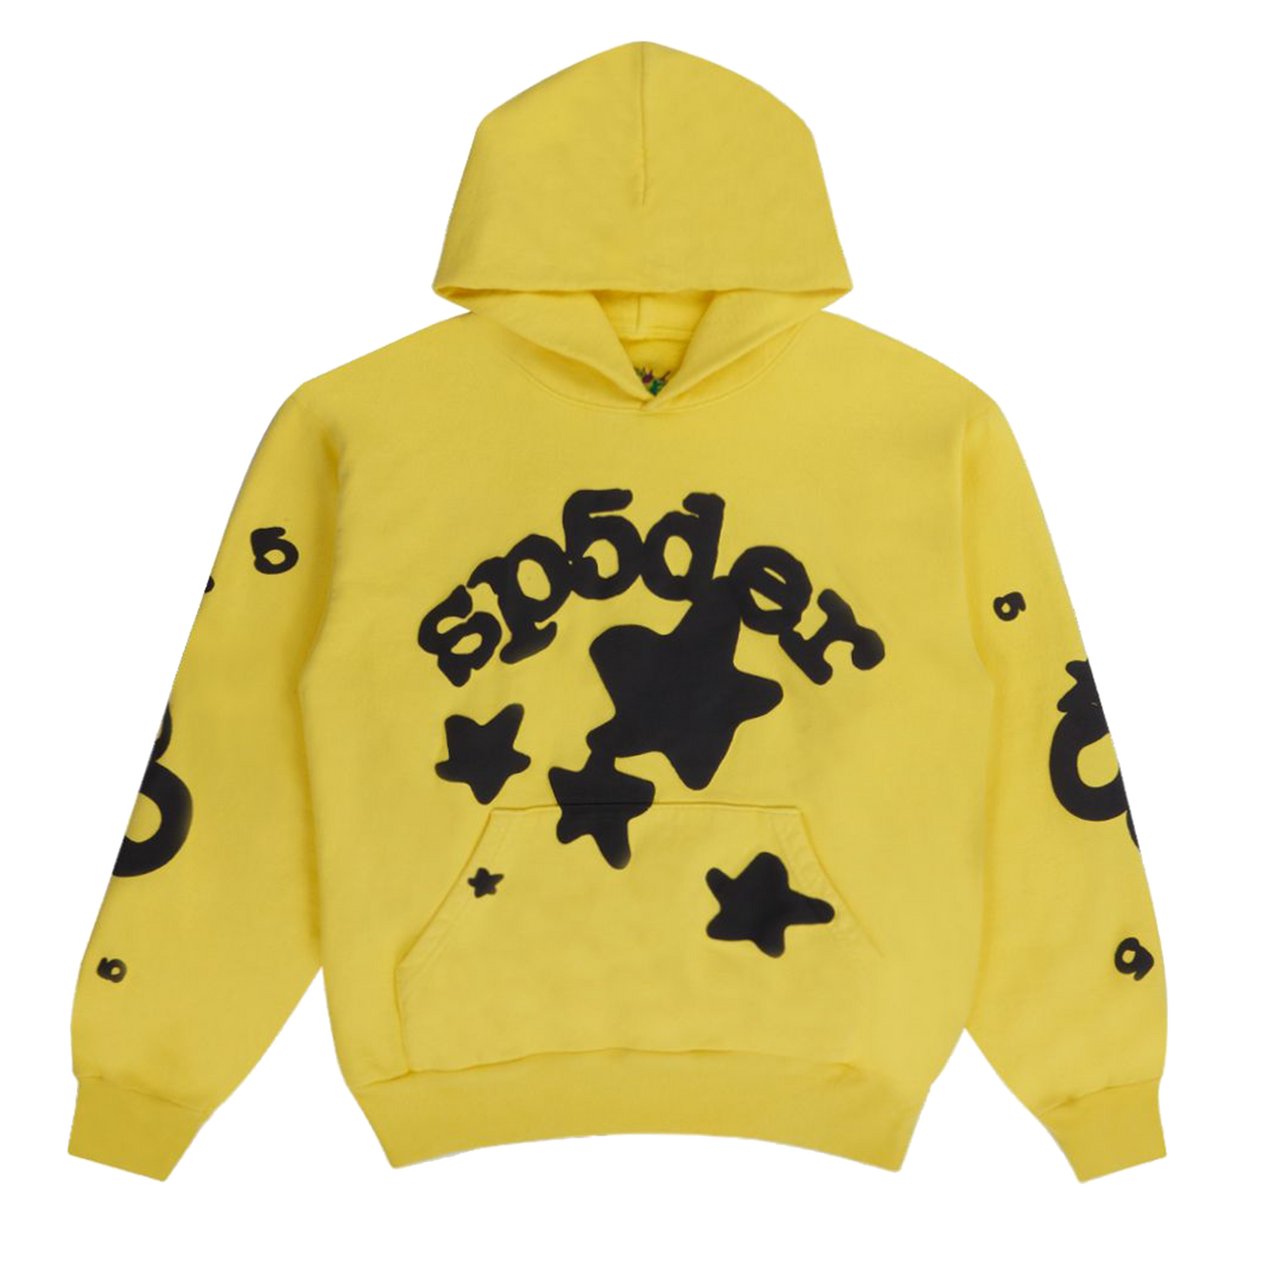 Sp5der Worldwide Beluga Sweatshirt Gold